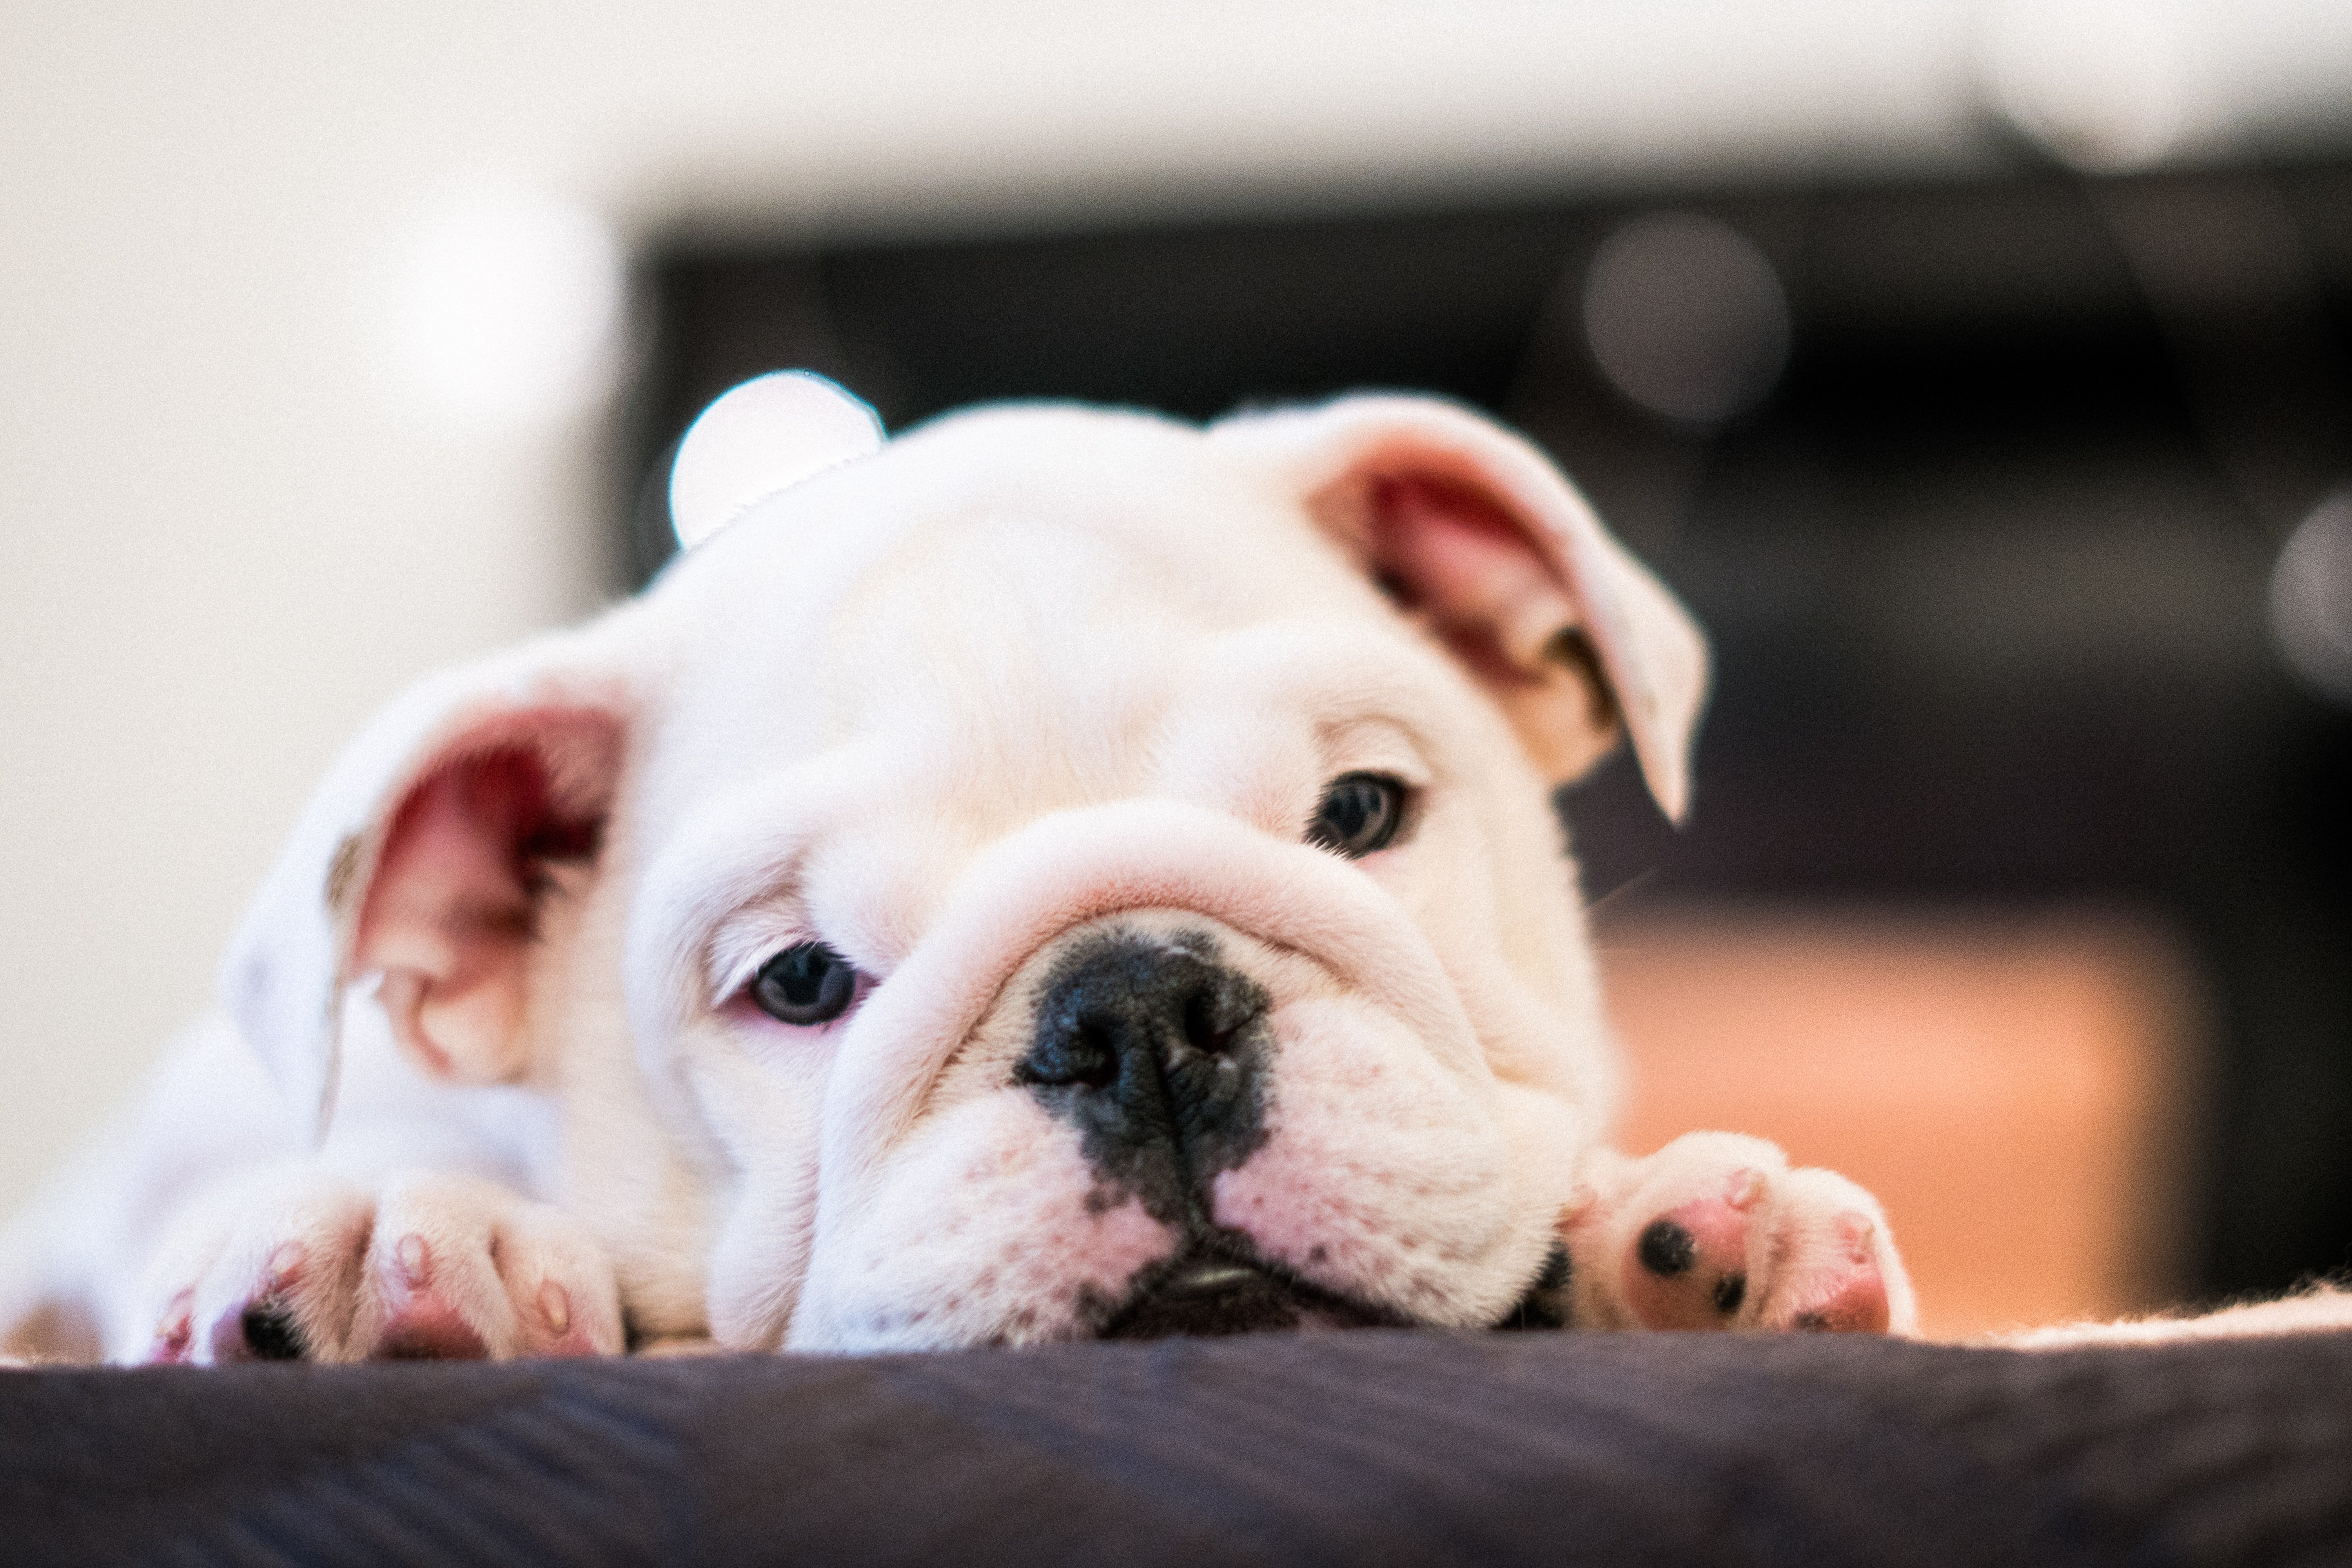 Bulldog. | Source: Pexels